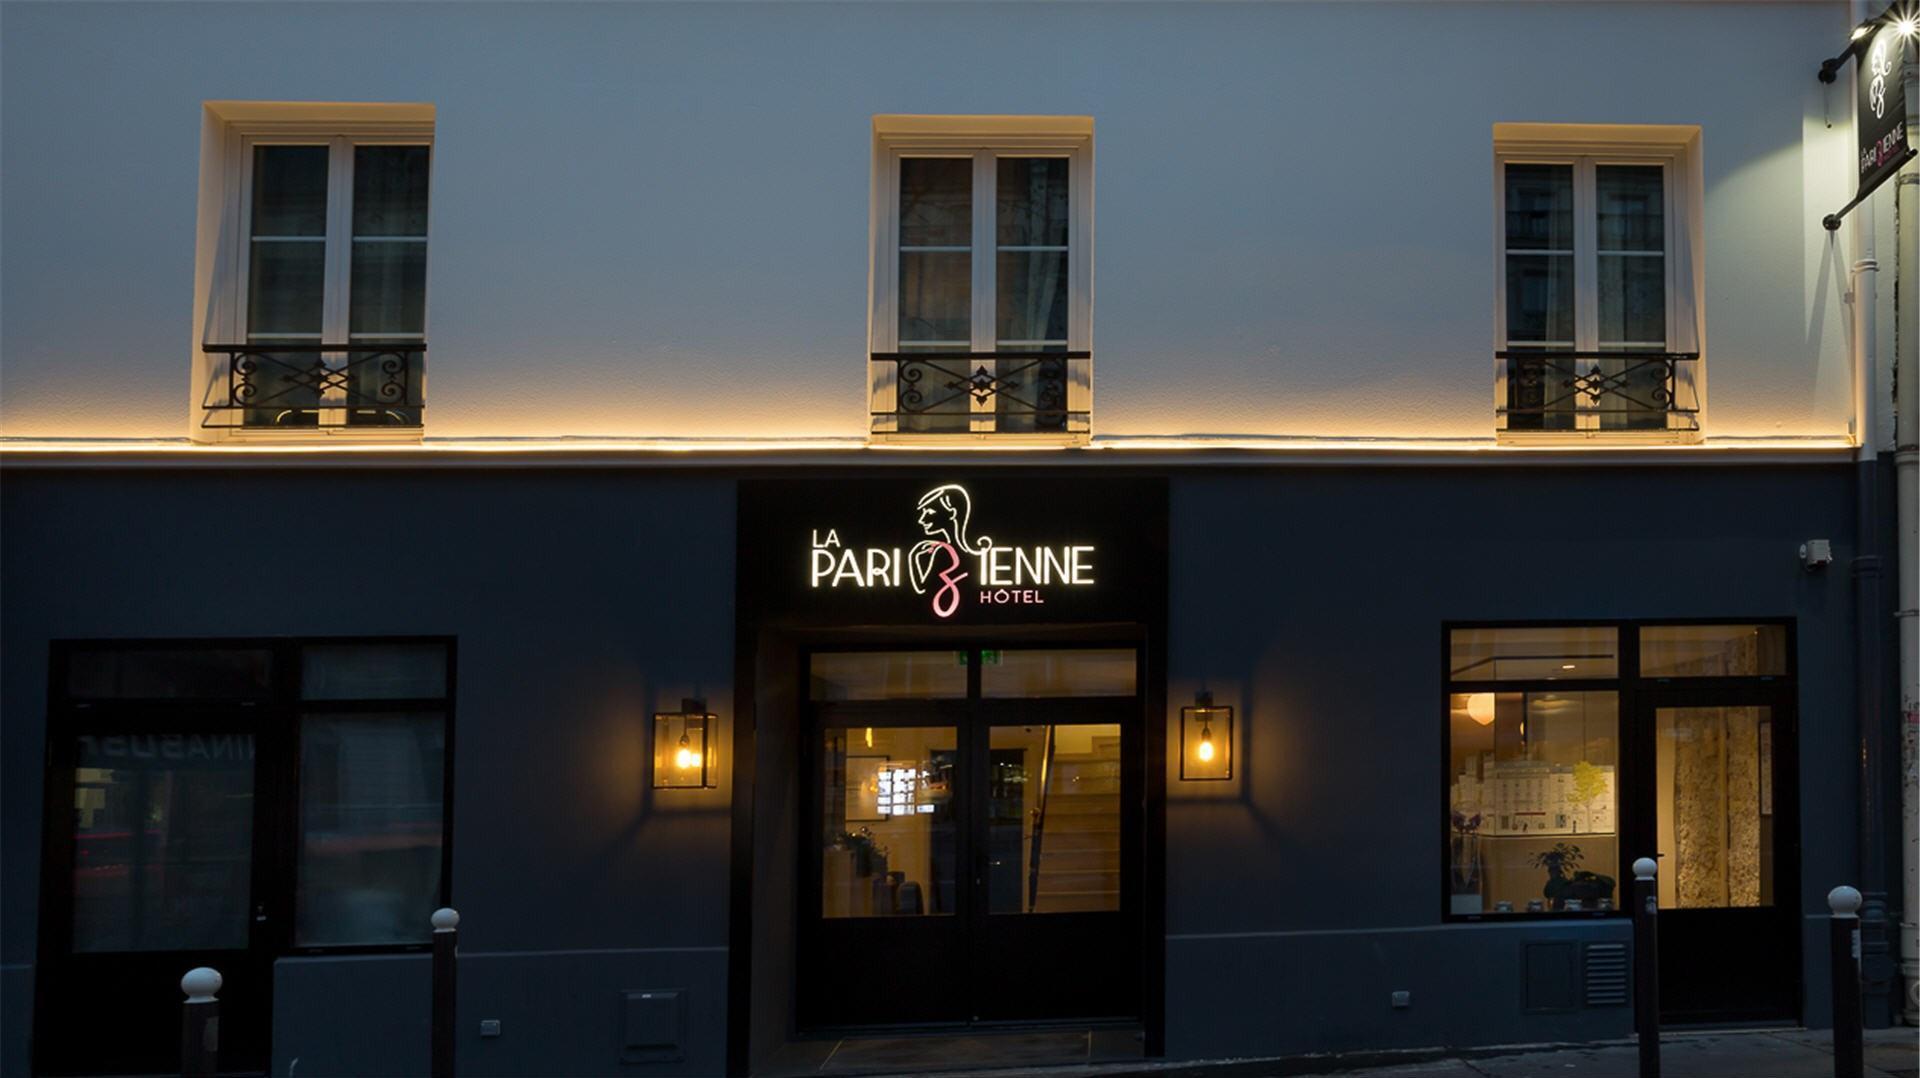 La Parizienne Hotel in Paris, FR